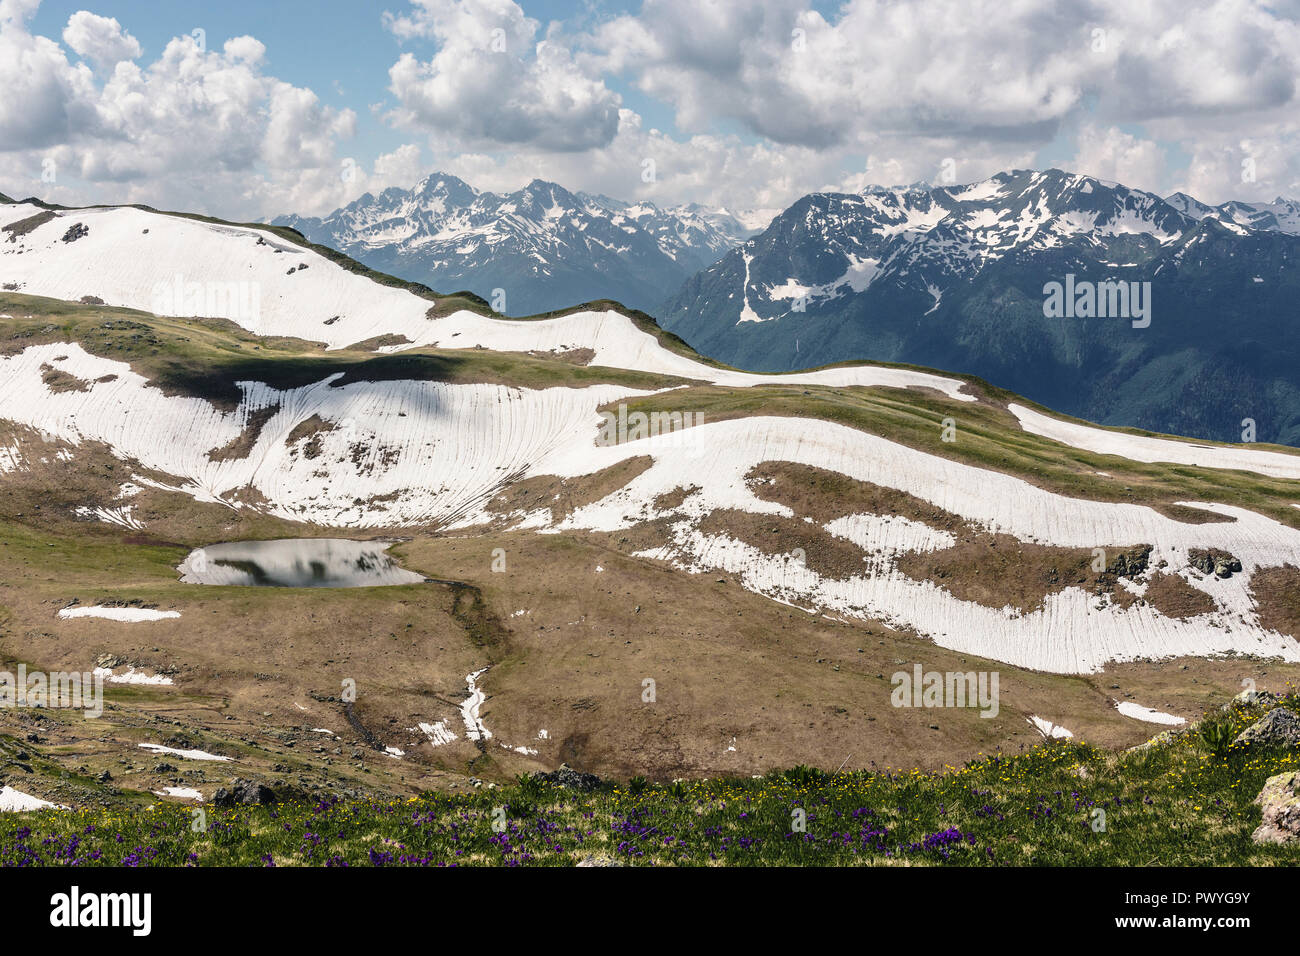 Les alpages et les clairières de fleurs sur fond de montagnes enneigées. Scène idyllique de hautes montagnes, hautes montagnes au printemps, dans le se Banque D'Images